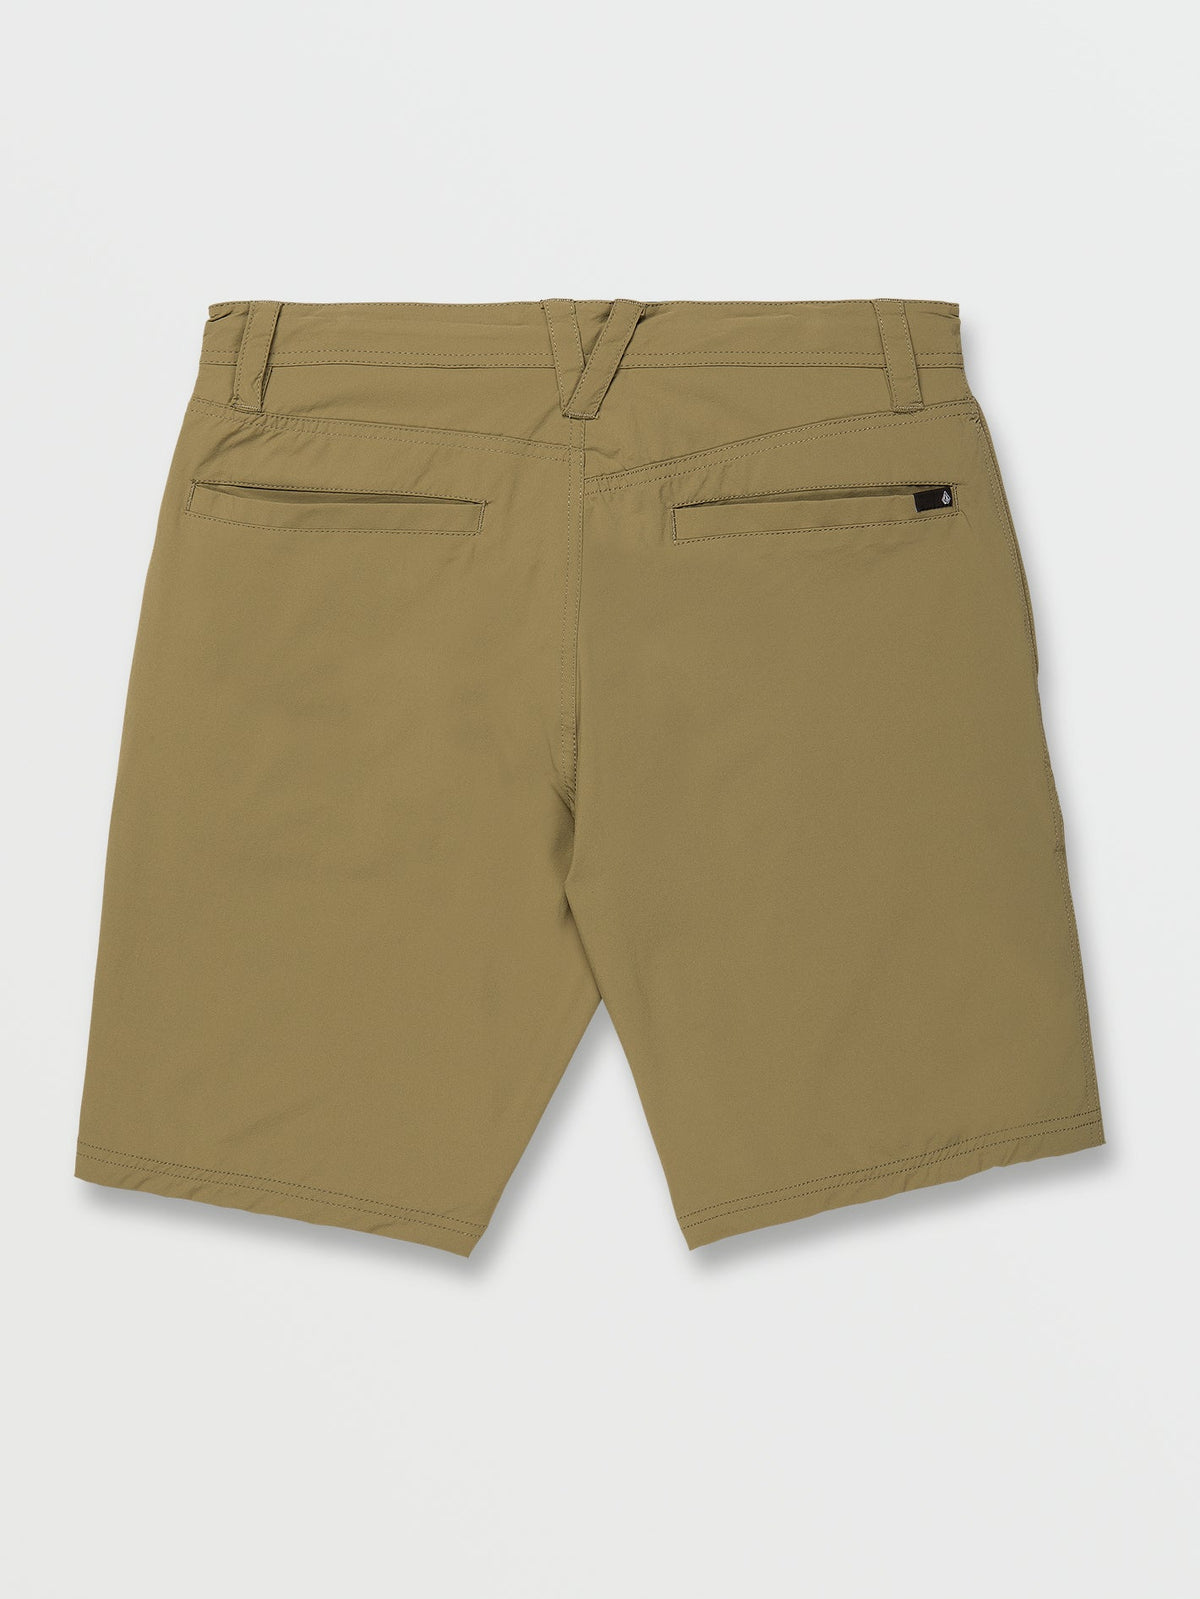 Voltripper Hybrid Shorts